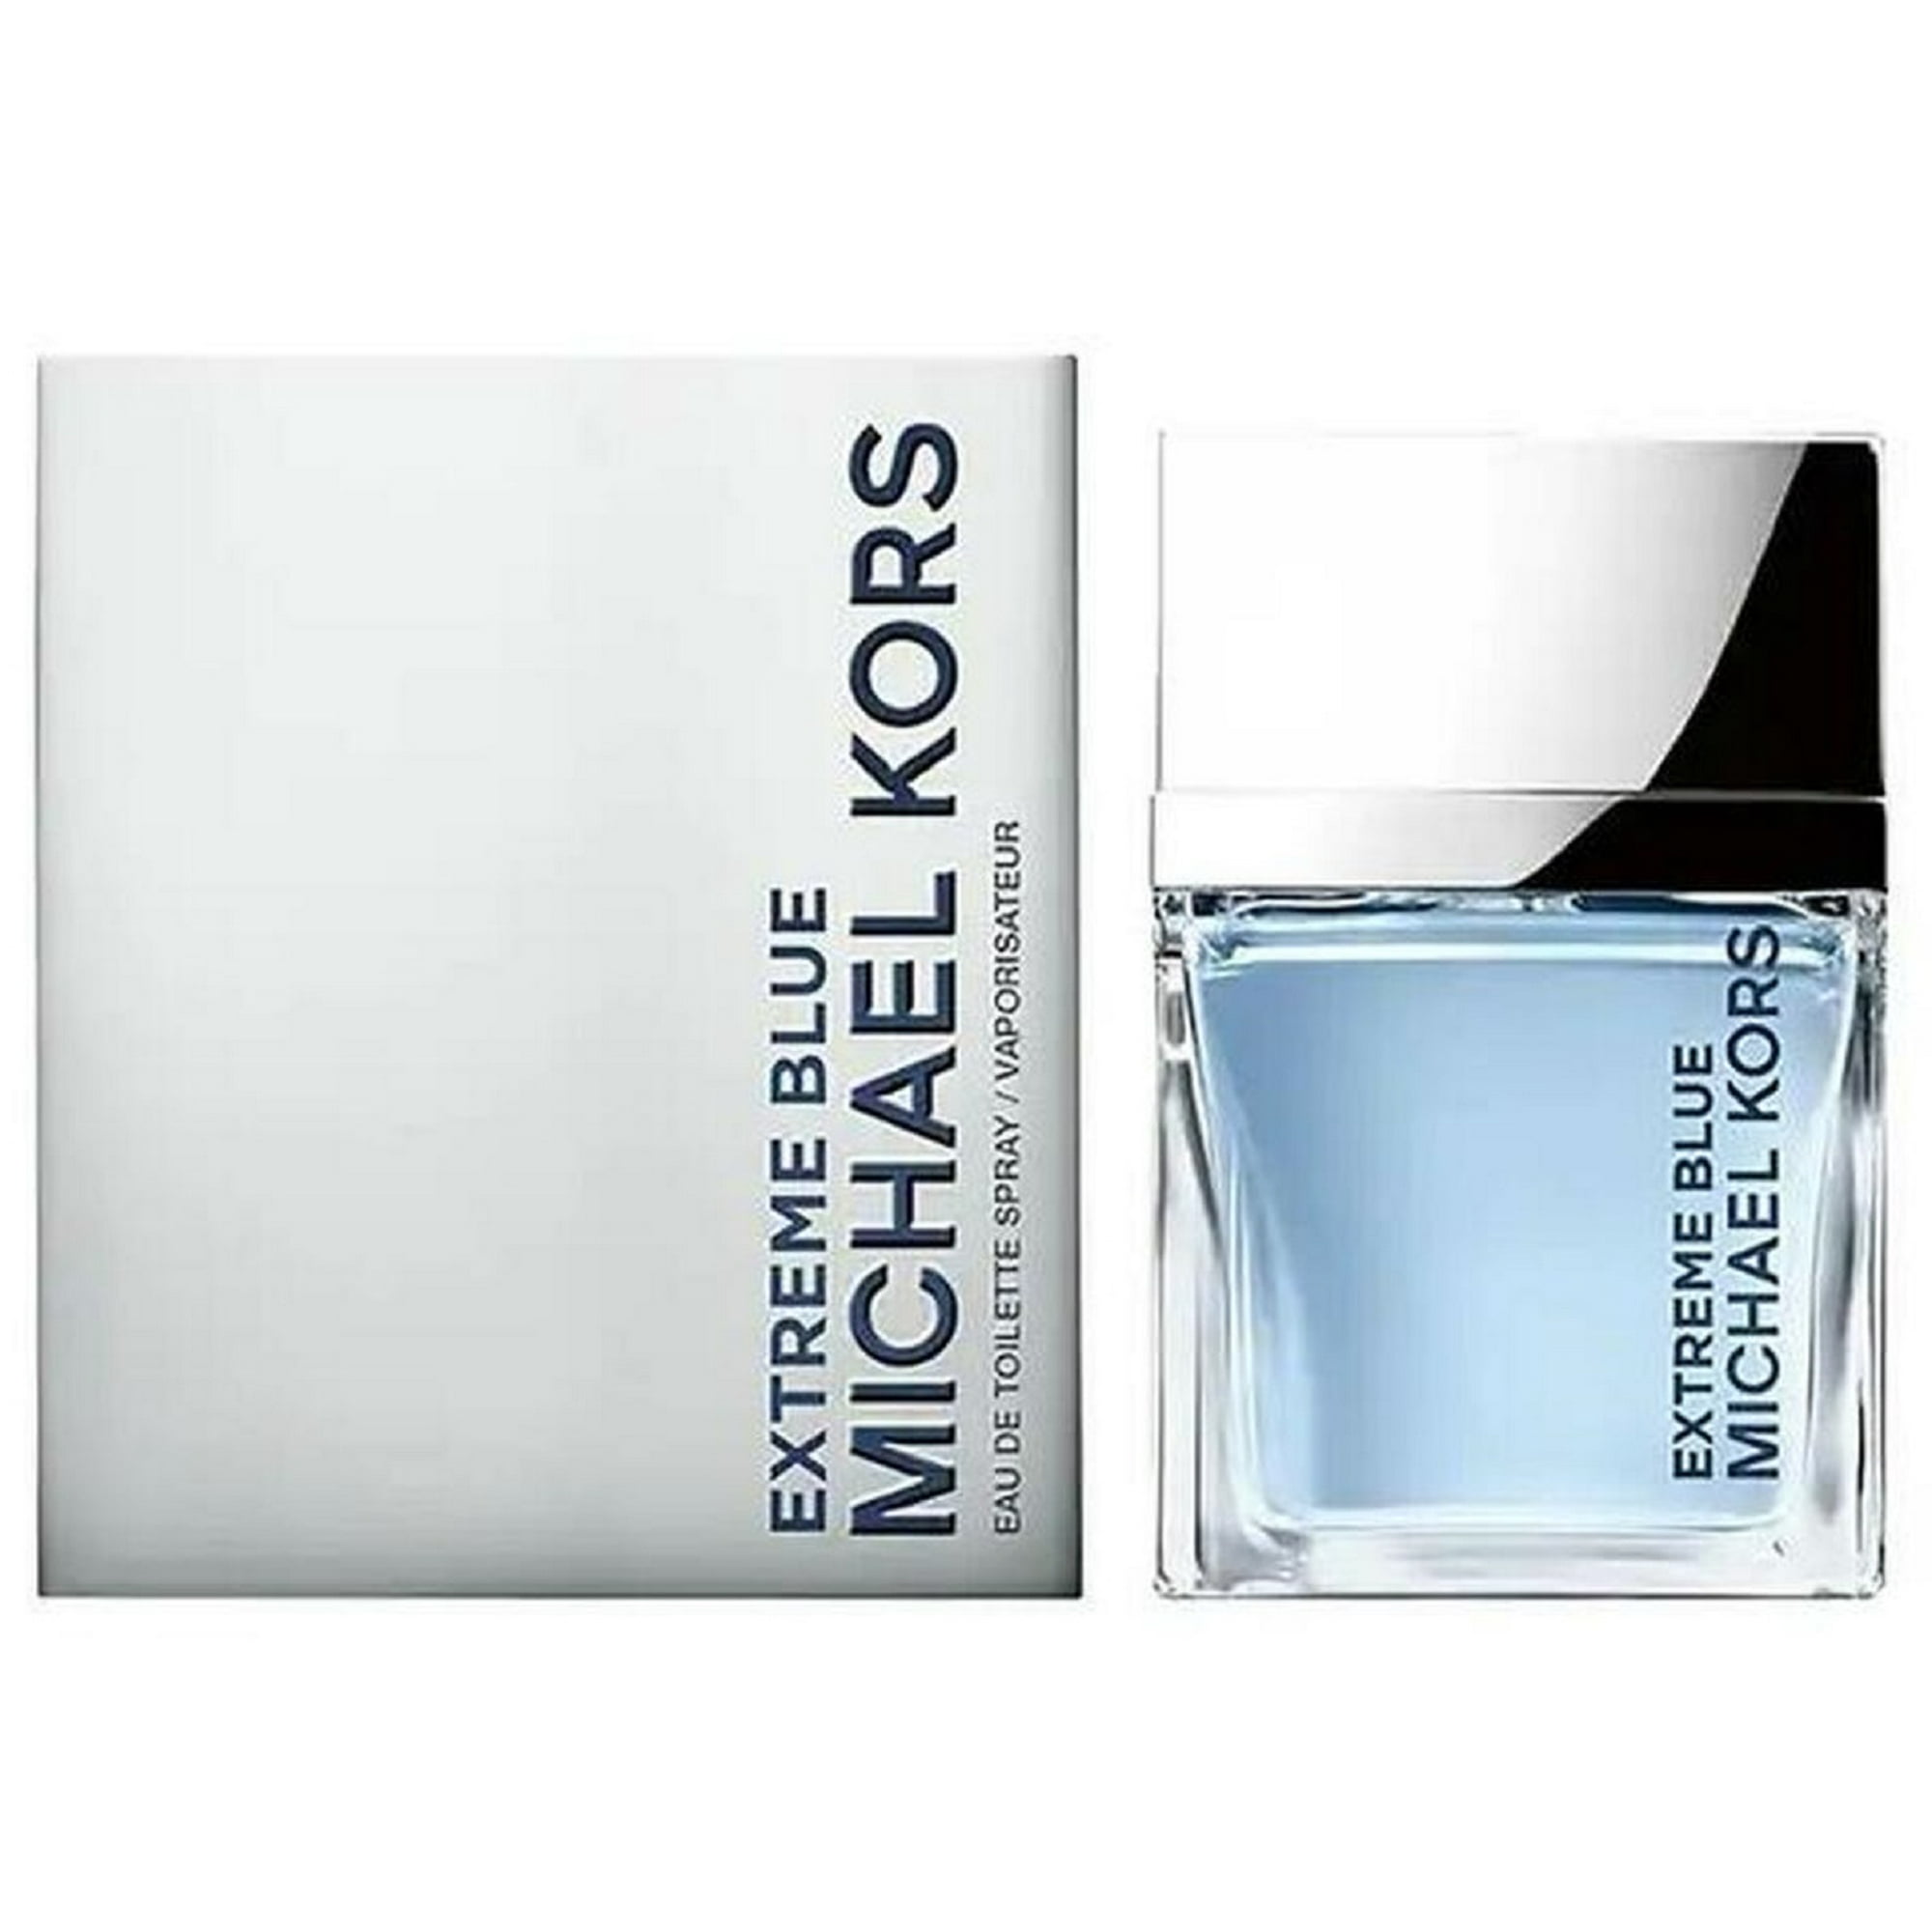 Michael Kors Extreme Blue For Men Cologne Eau de Toilette 4.0 oz